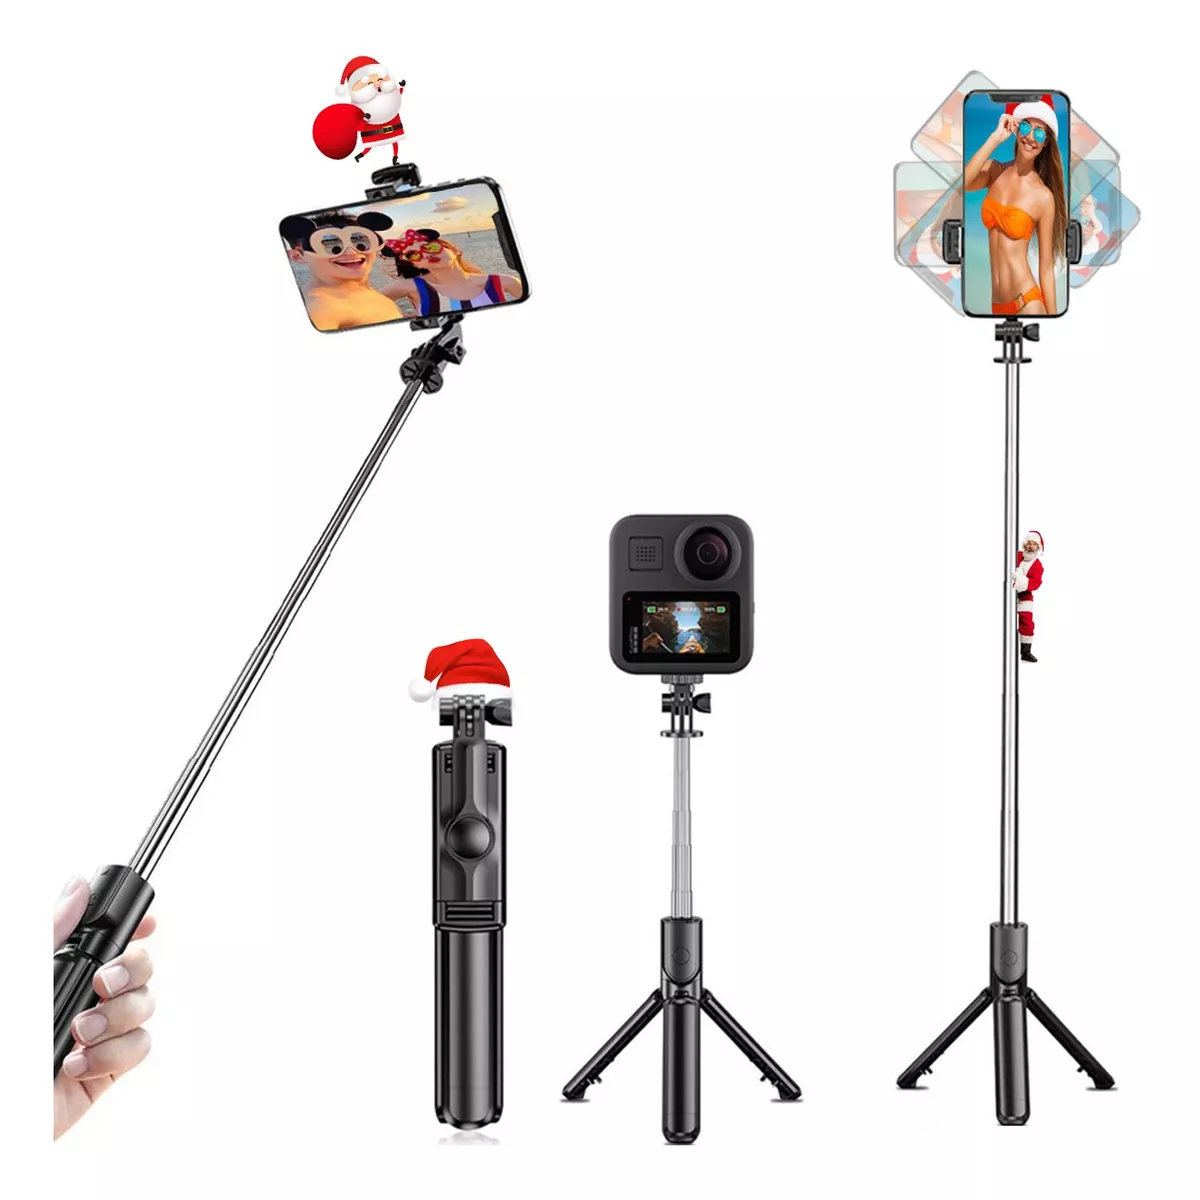 Palo selfie y trípode/monopié LINCO Lincostore - Trípode portátil ligero  para teléfono profesional resistente con control remoto inalámbrico  Bluetooth